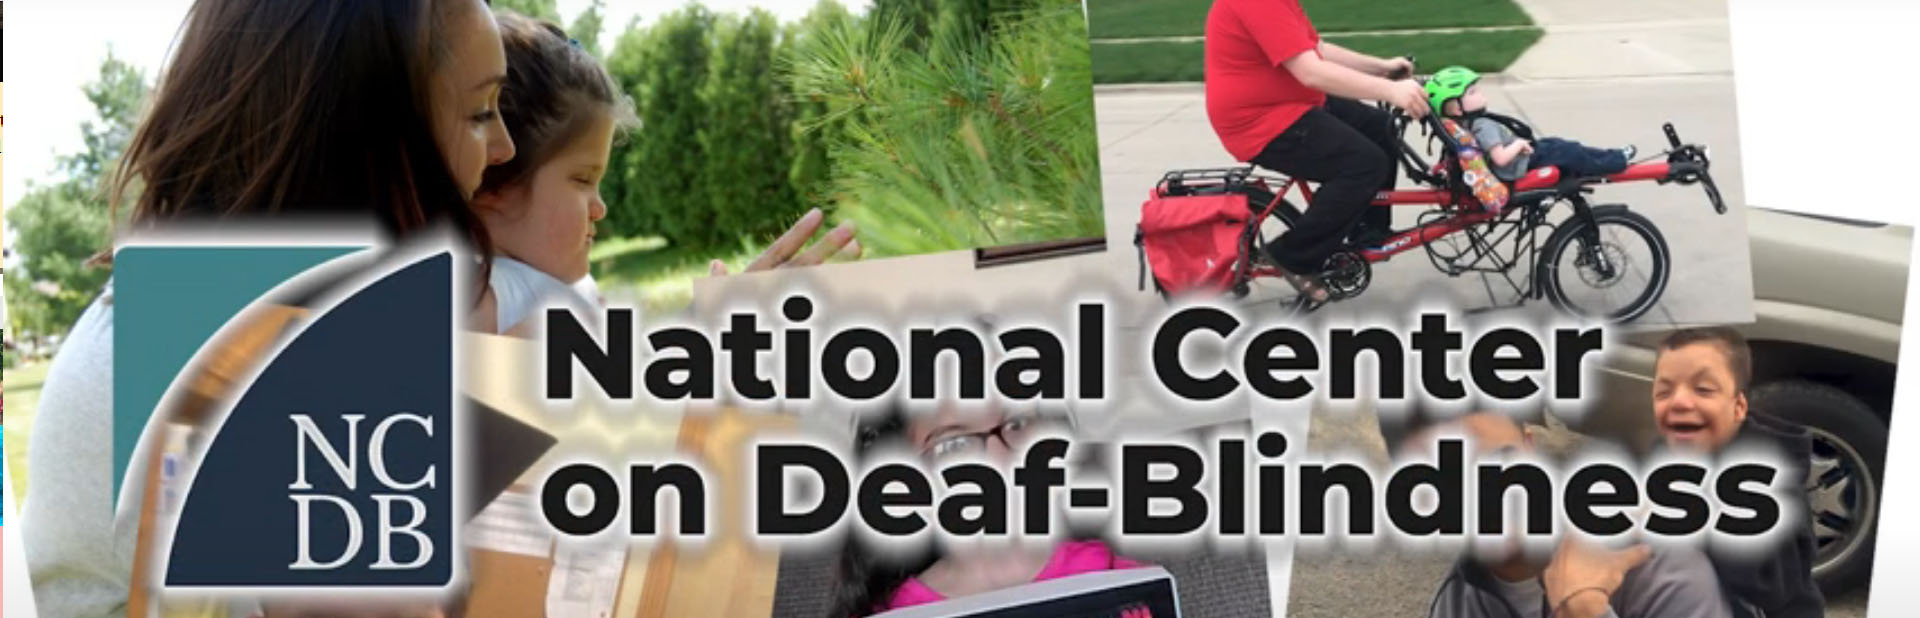 Image for National Center On Deaf-Blindness